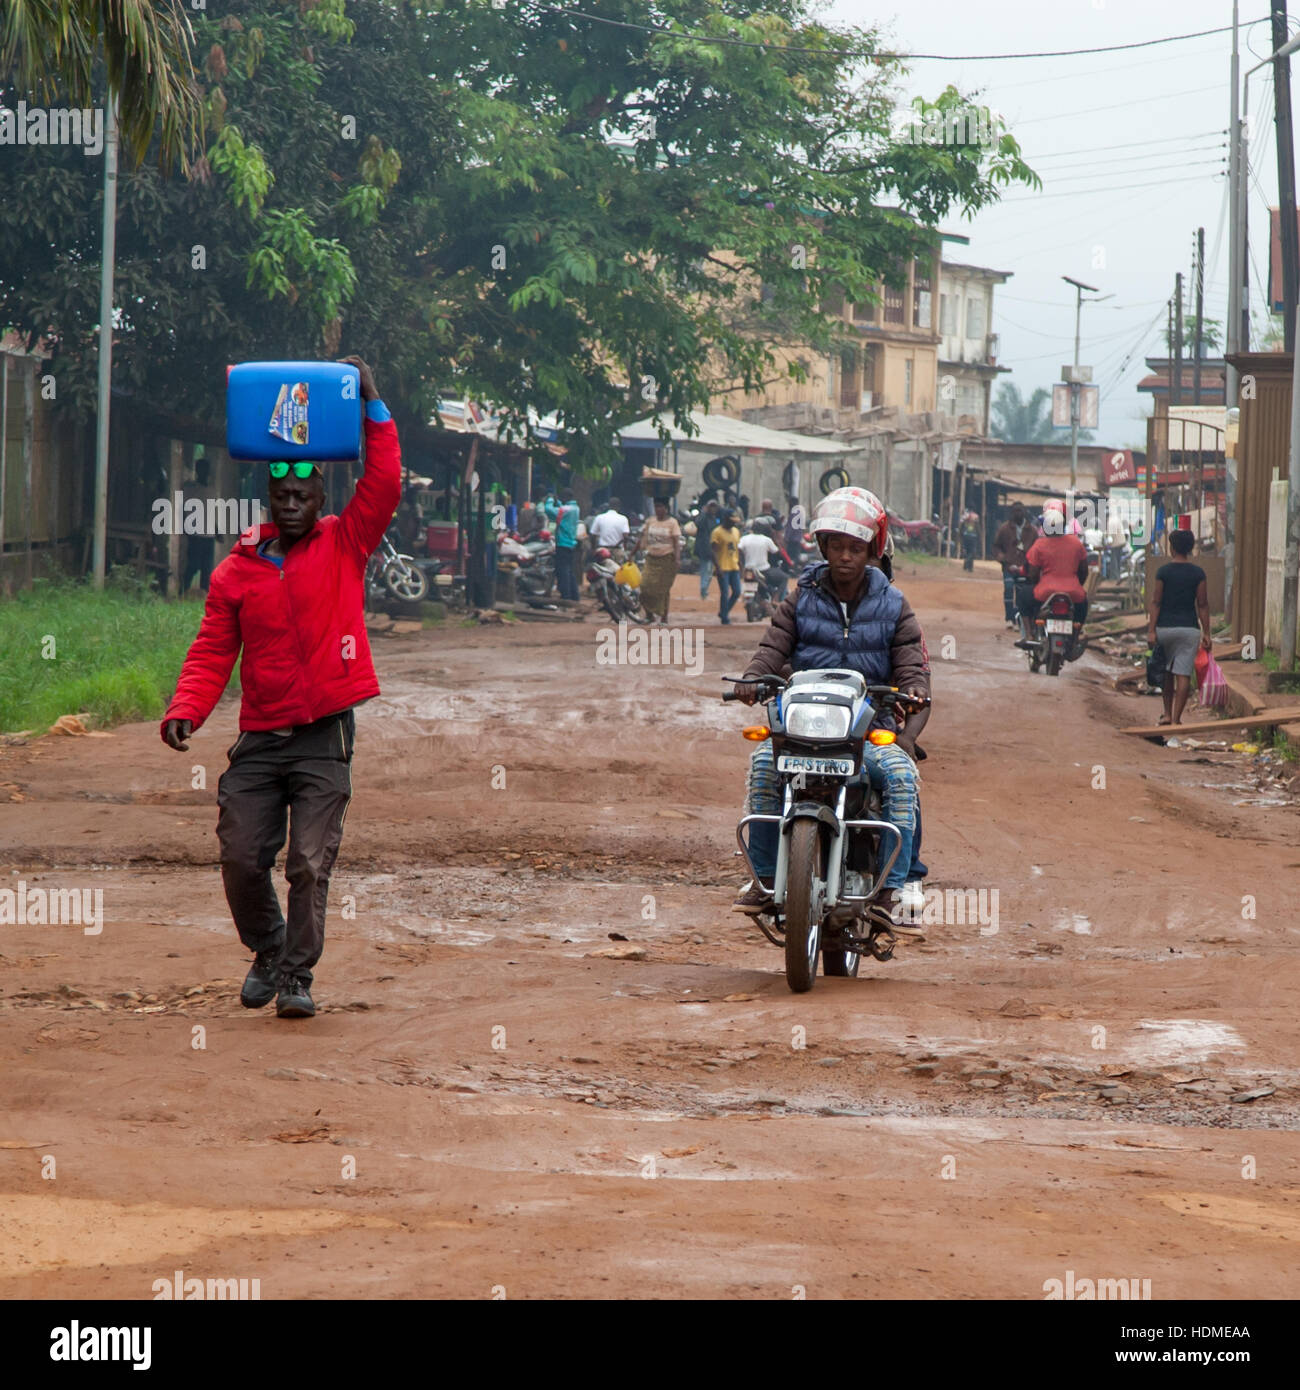 Rue à Kenema, Sierra Leone. Ici, les piétons et les conducteurs de véhicules automobiles ne font pas toujours attention les uns aux autres Banque D'Images